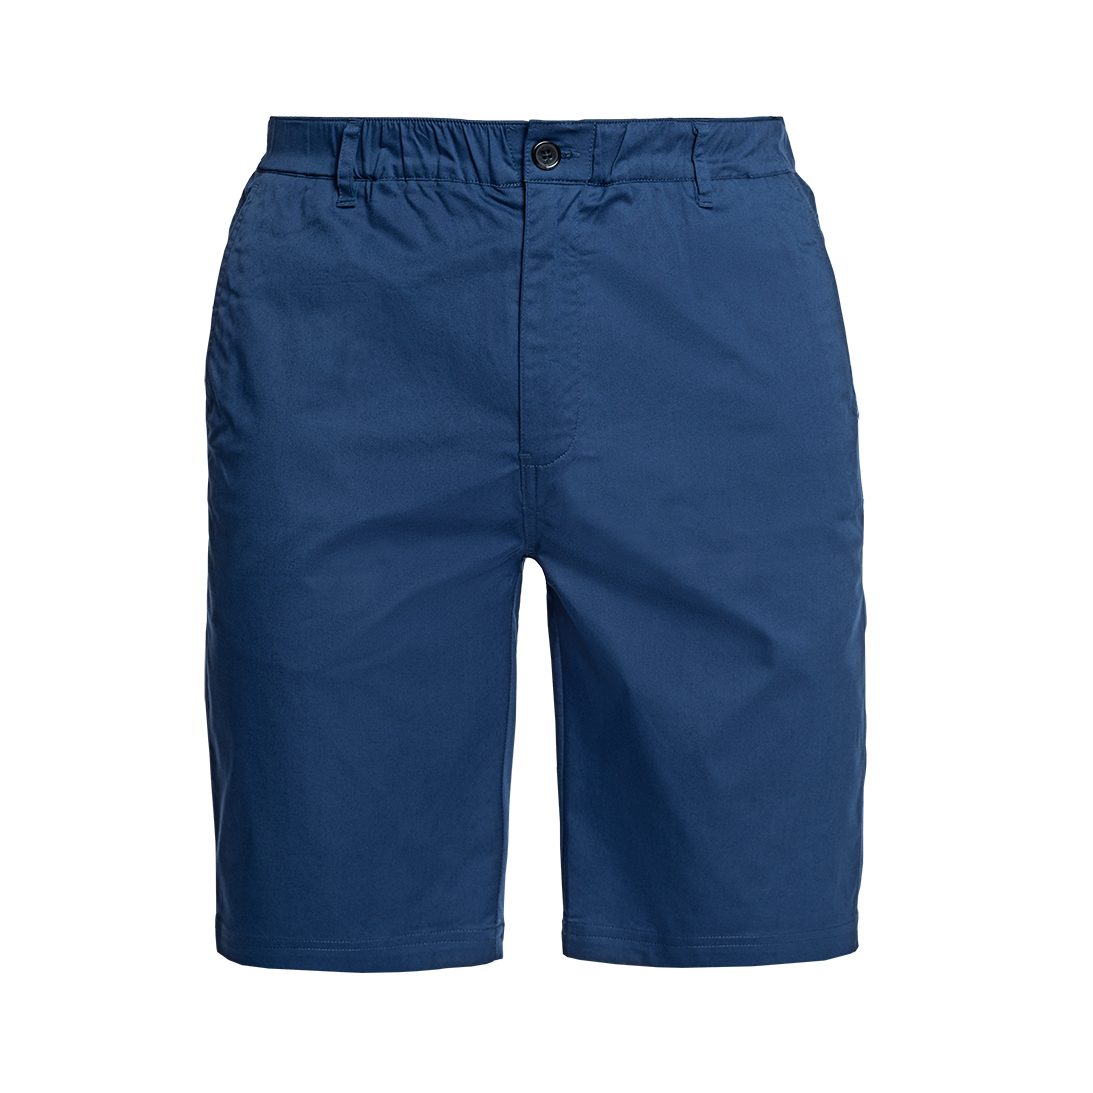 Papas Shorts Chinoshorts Kurze knielange Shorts - Sommer Shorts mit bequemem, elastischem Bund und 6 Taschen, davon 2 versteckten, sicheren Reißverschlusstaschen für Wertgegenstände königsblau